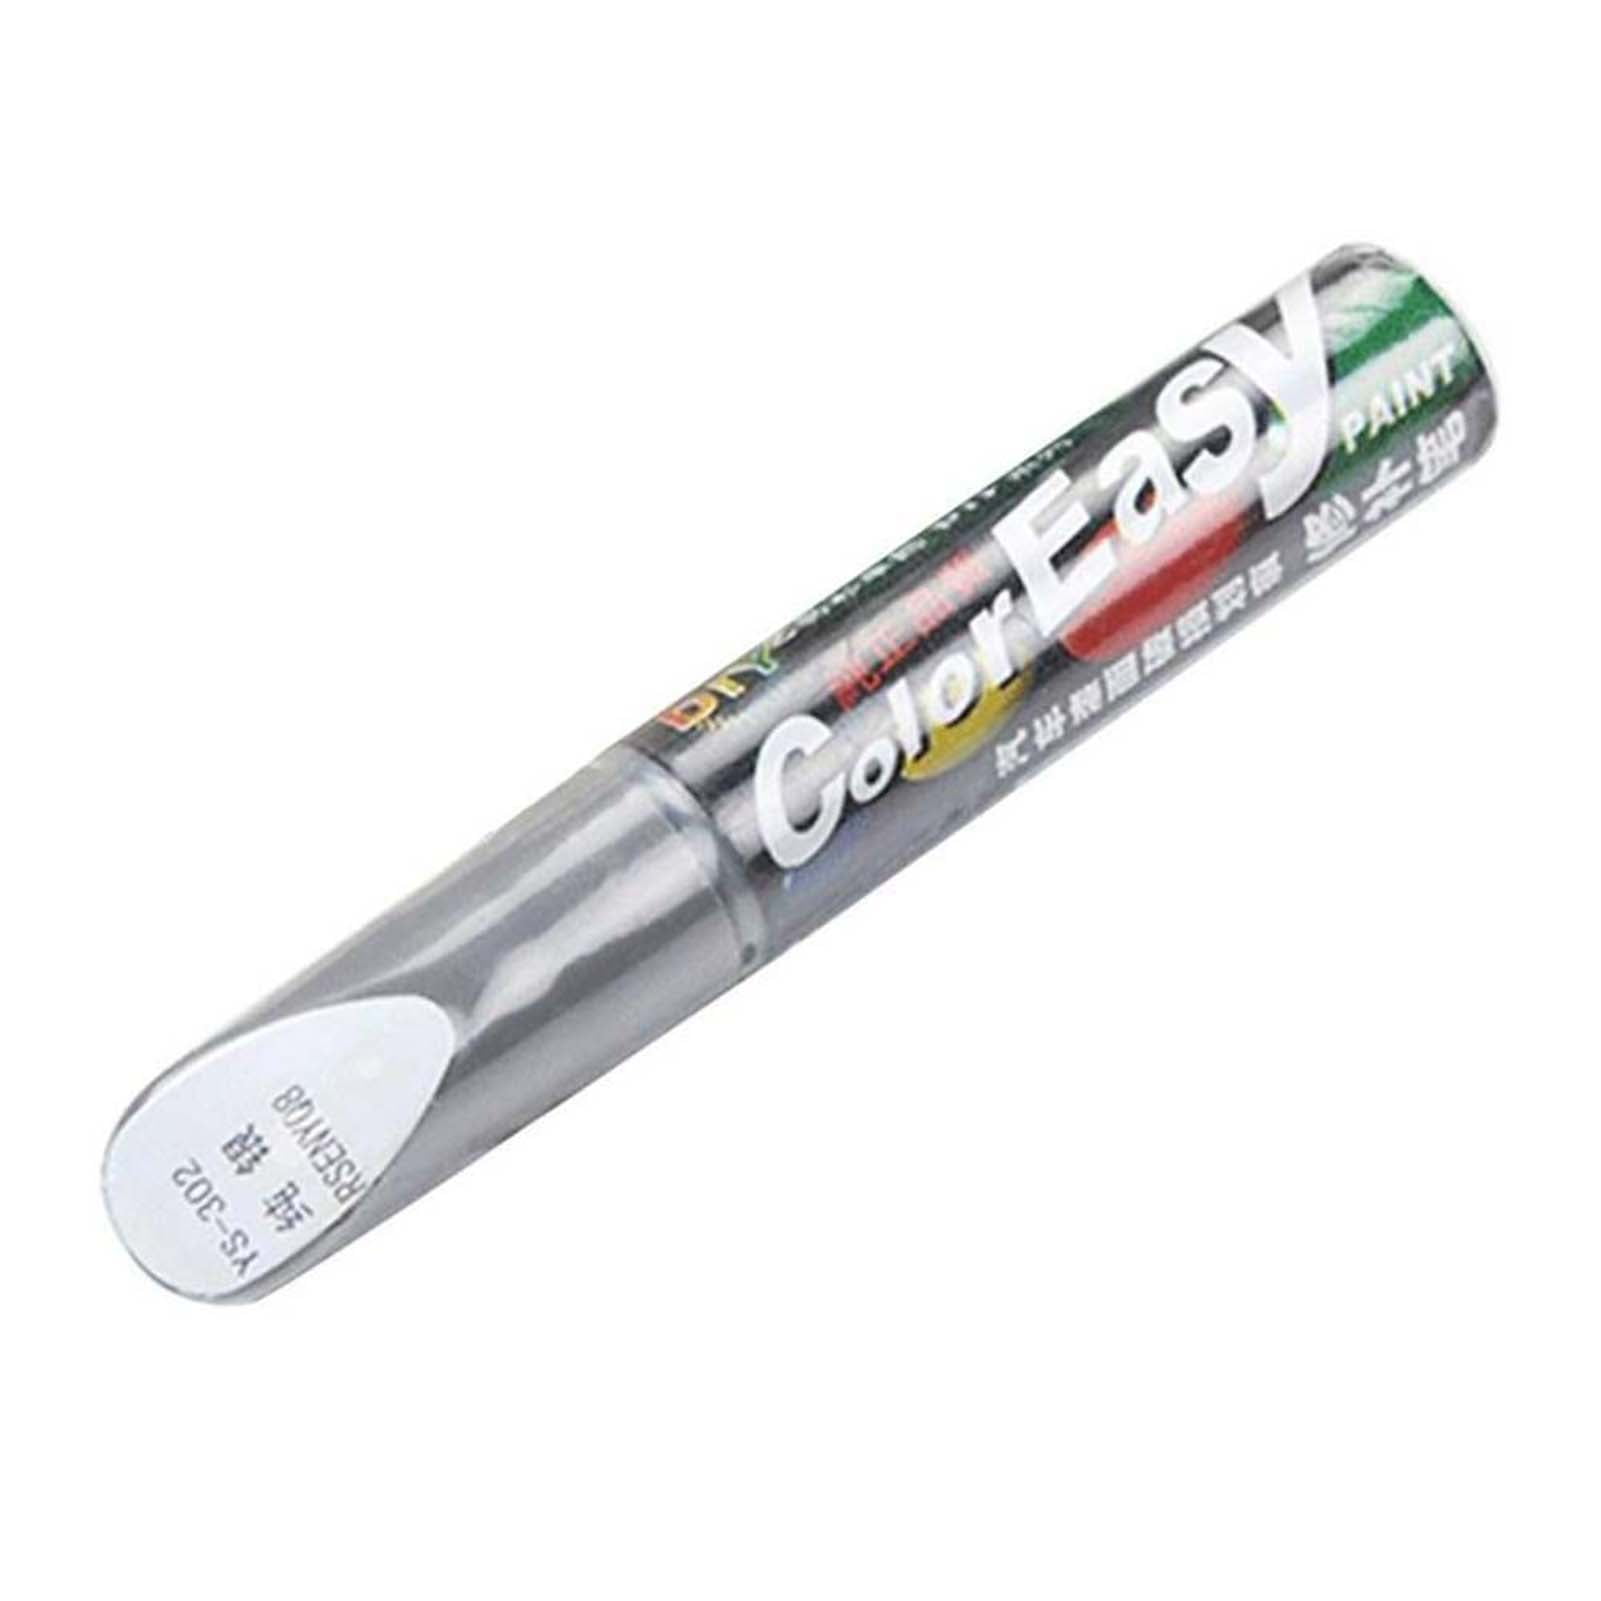 DIY Solutions® TLS00784 - 0.25 fl. oz. Super White Touch-Up Paint Scratch  Repair Pen